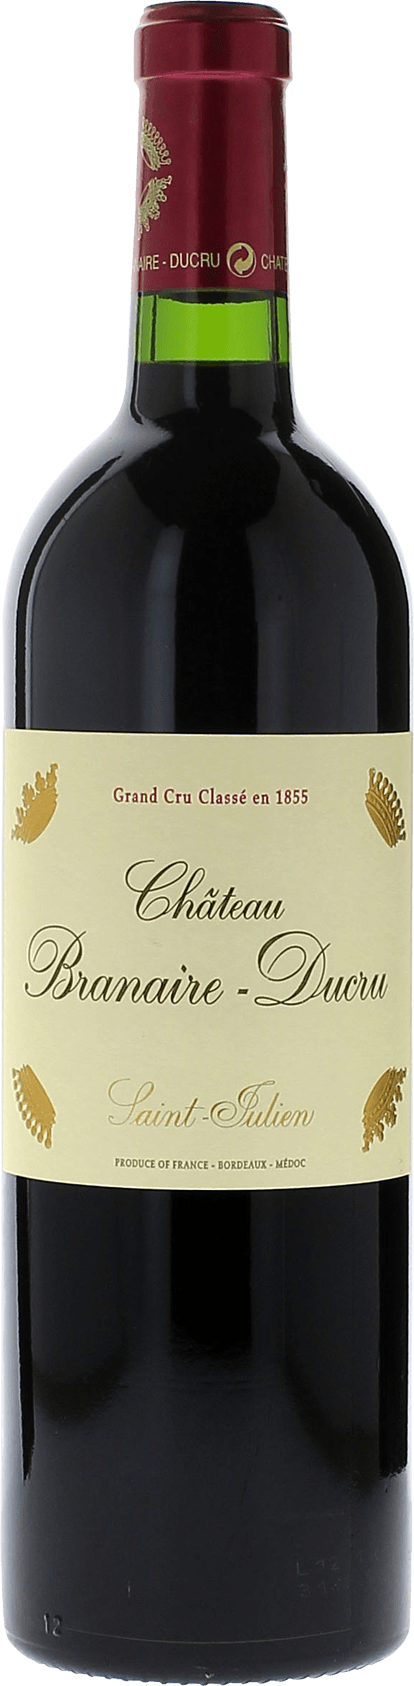 Branaire ducru 1999 4me Grand cru class Saint-Julien, Bordeaux rouge